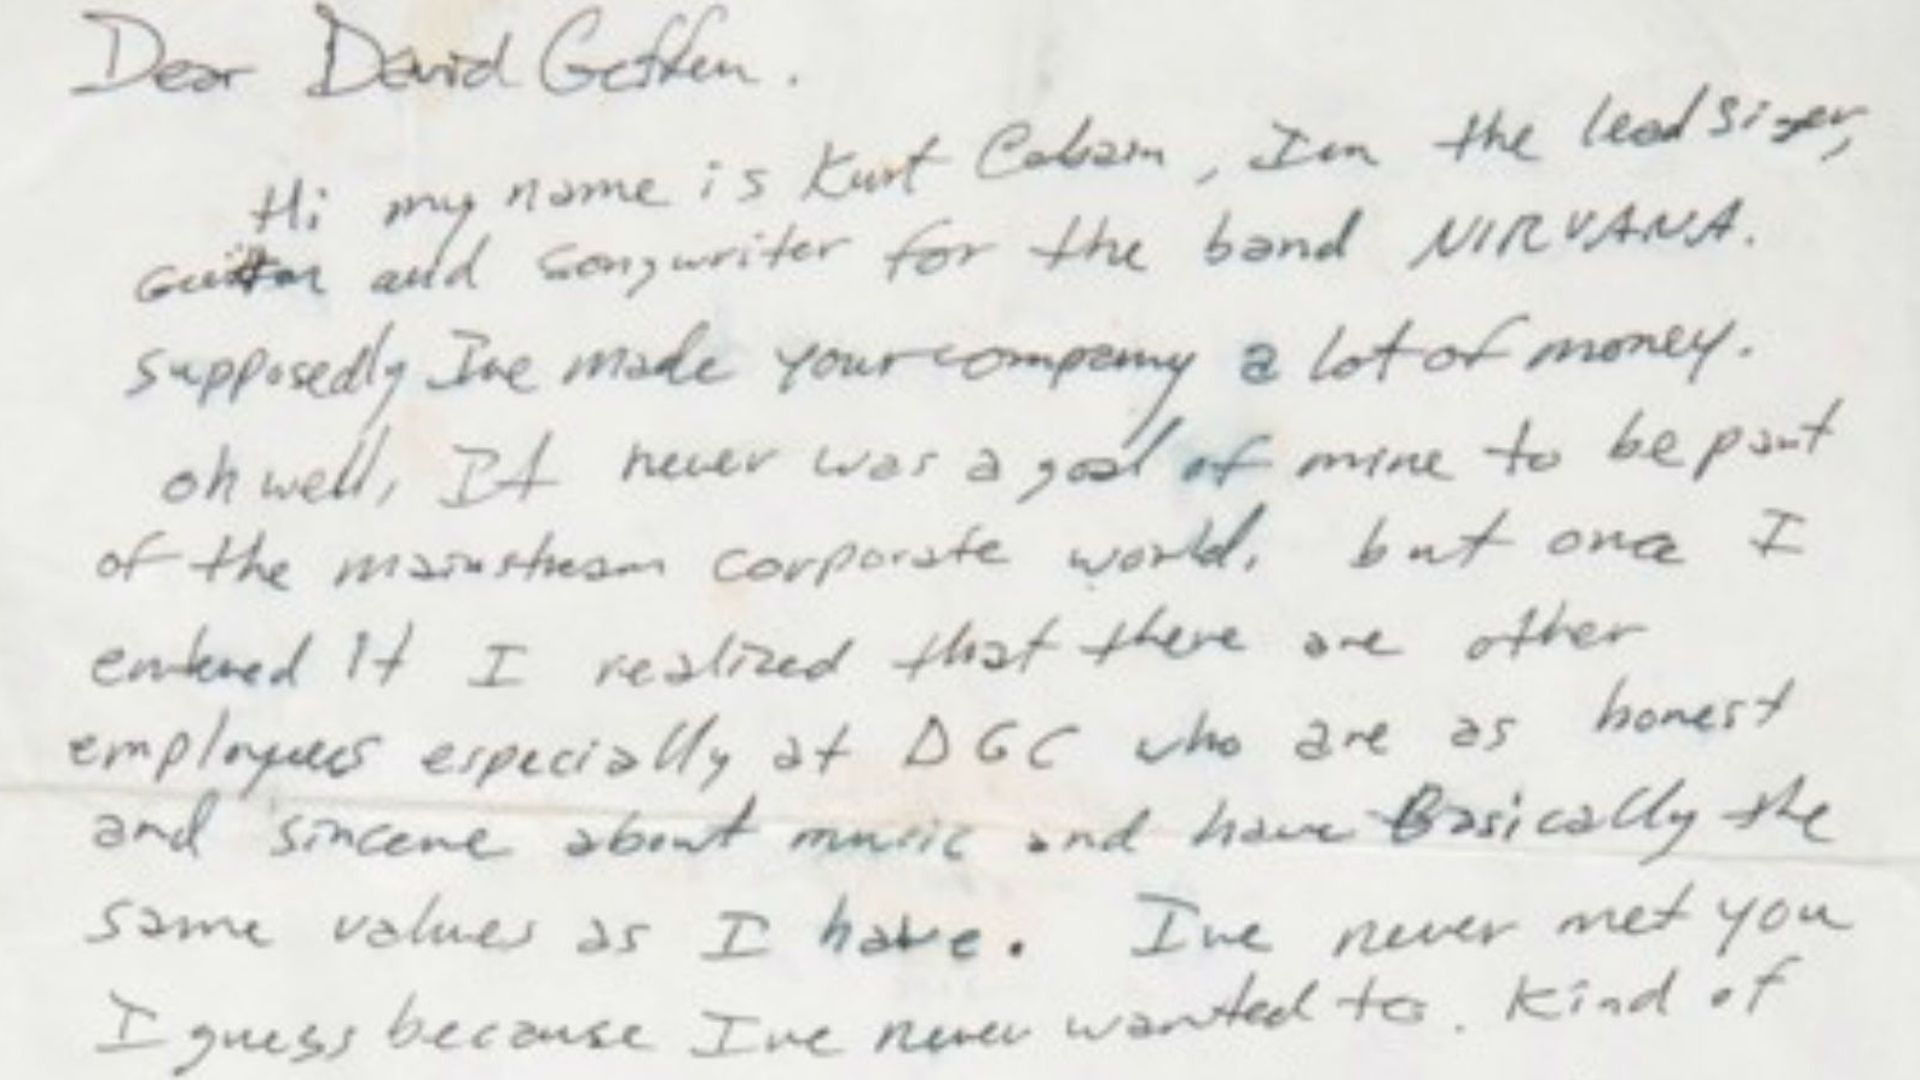 une-lettre-dans-laquelle-kurt-cobain-menace-de-quitter-sa-maison-de-disque-mise-aux-encheres